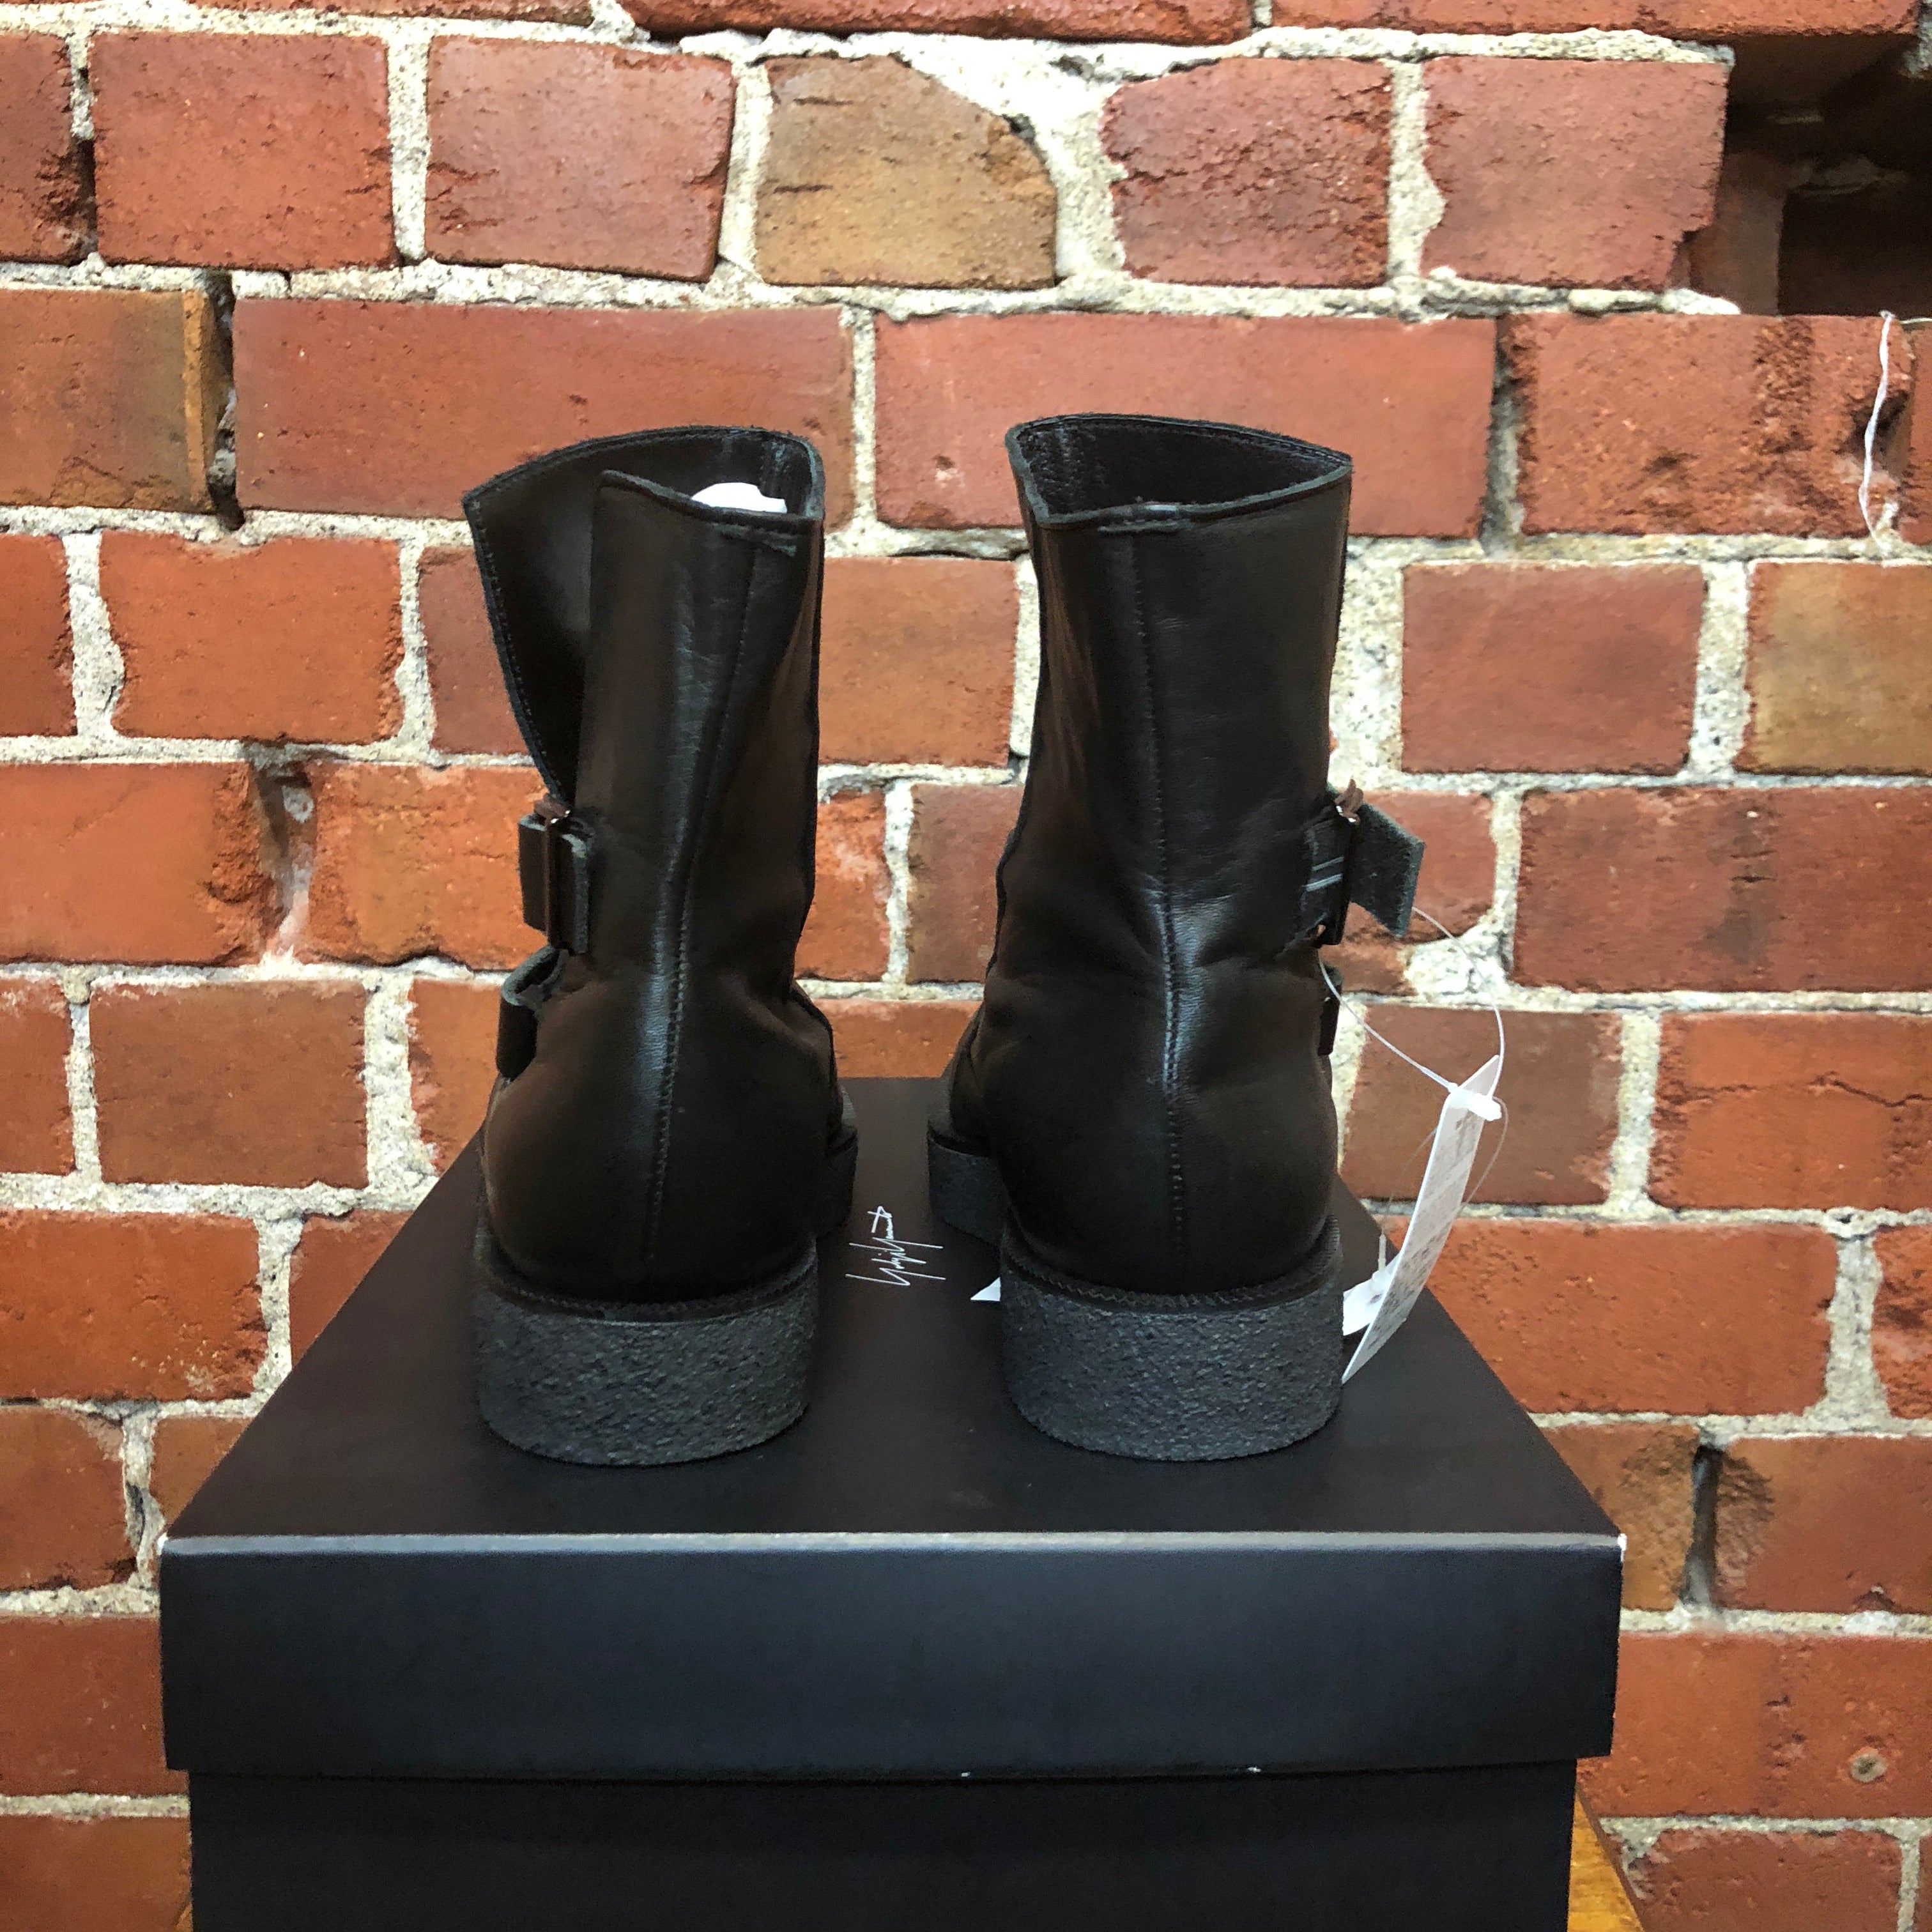 YOHJI YAMAMOTO leather boots 6.5